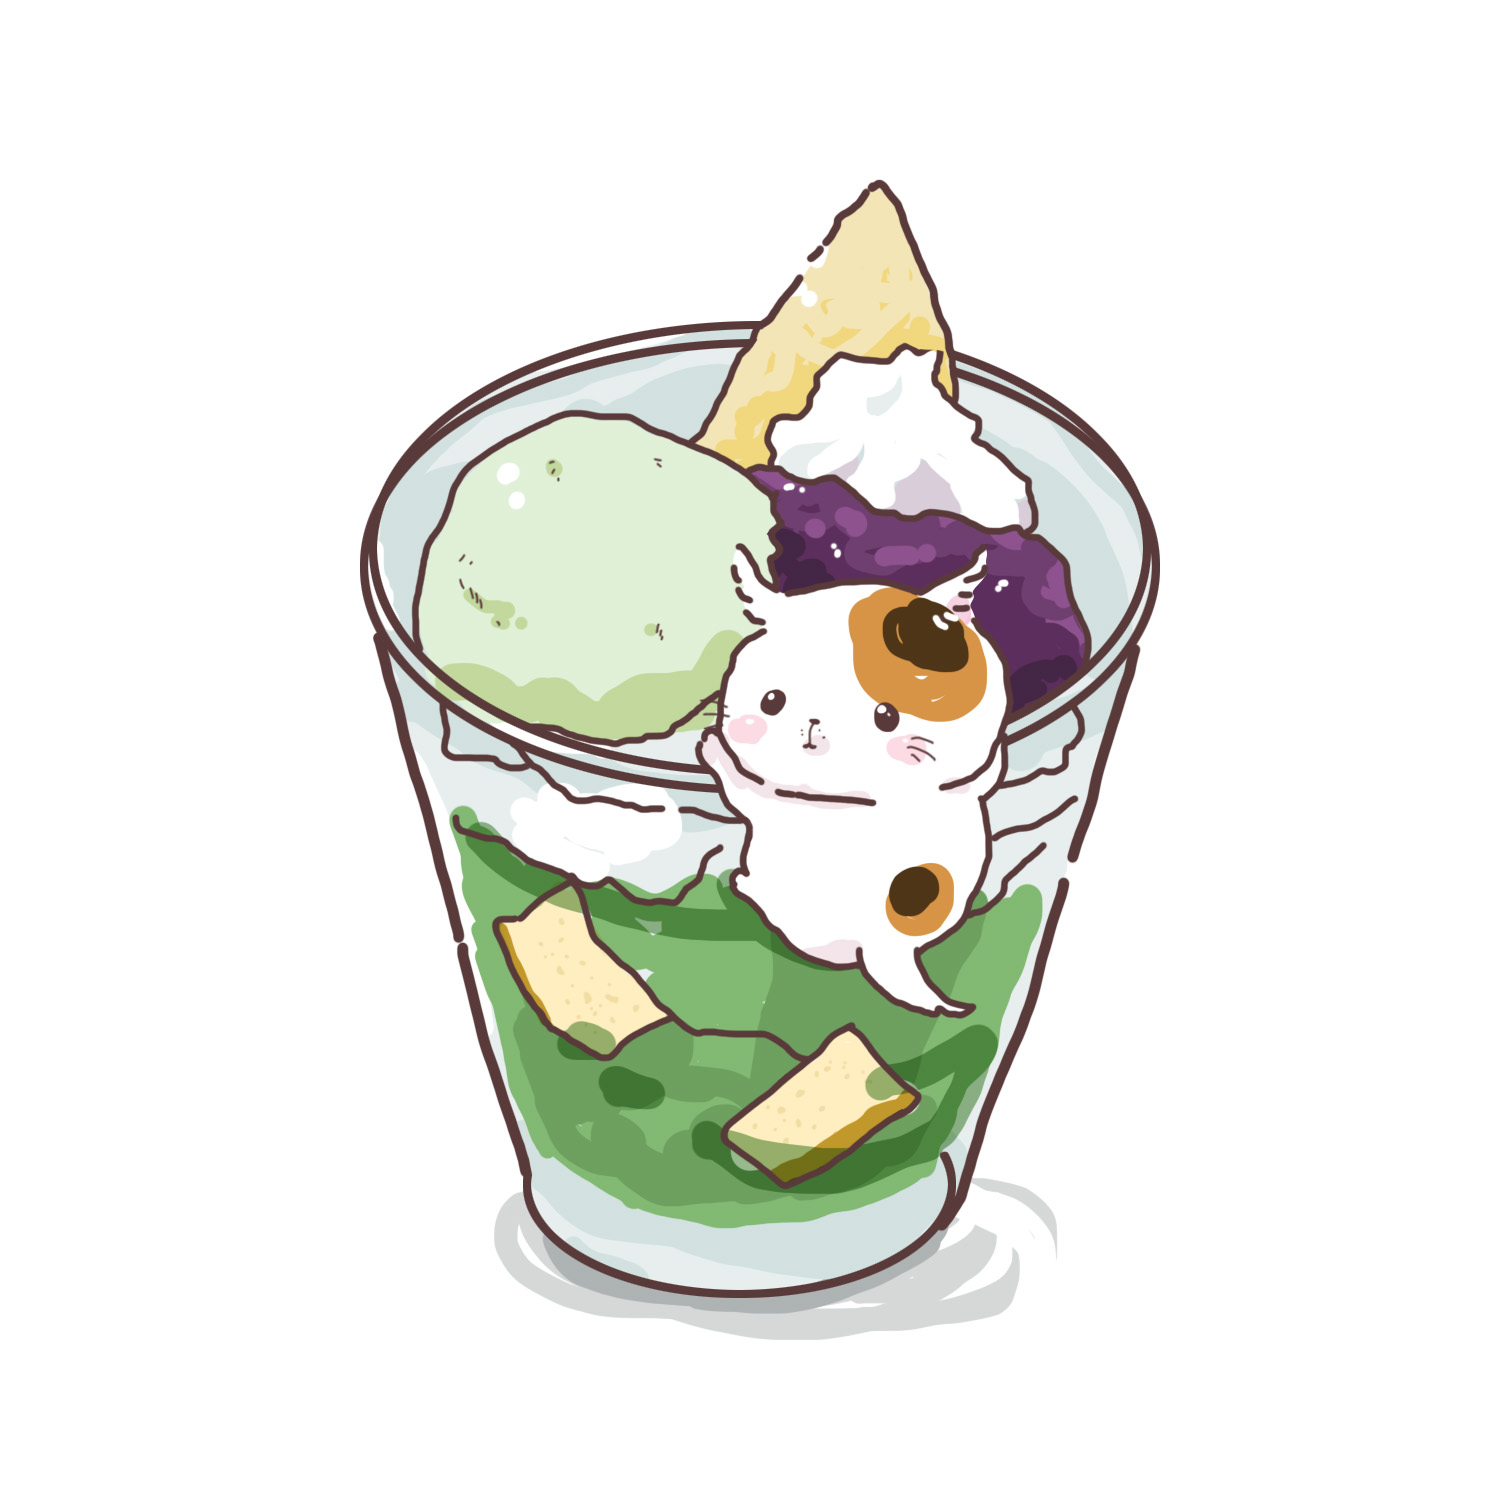 Котик мороженое